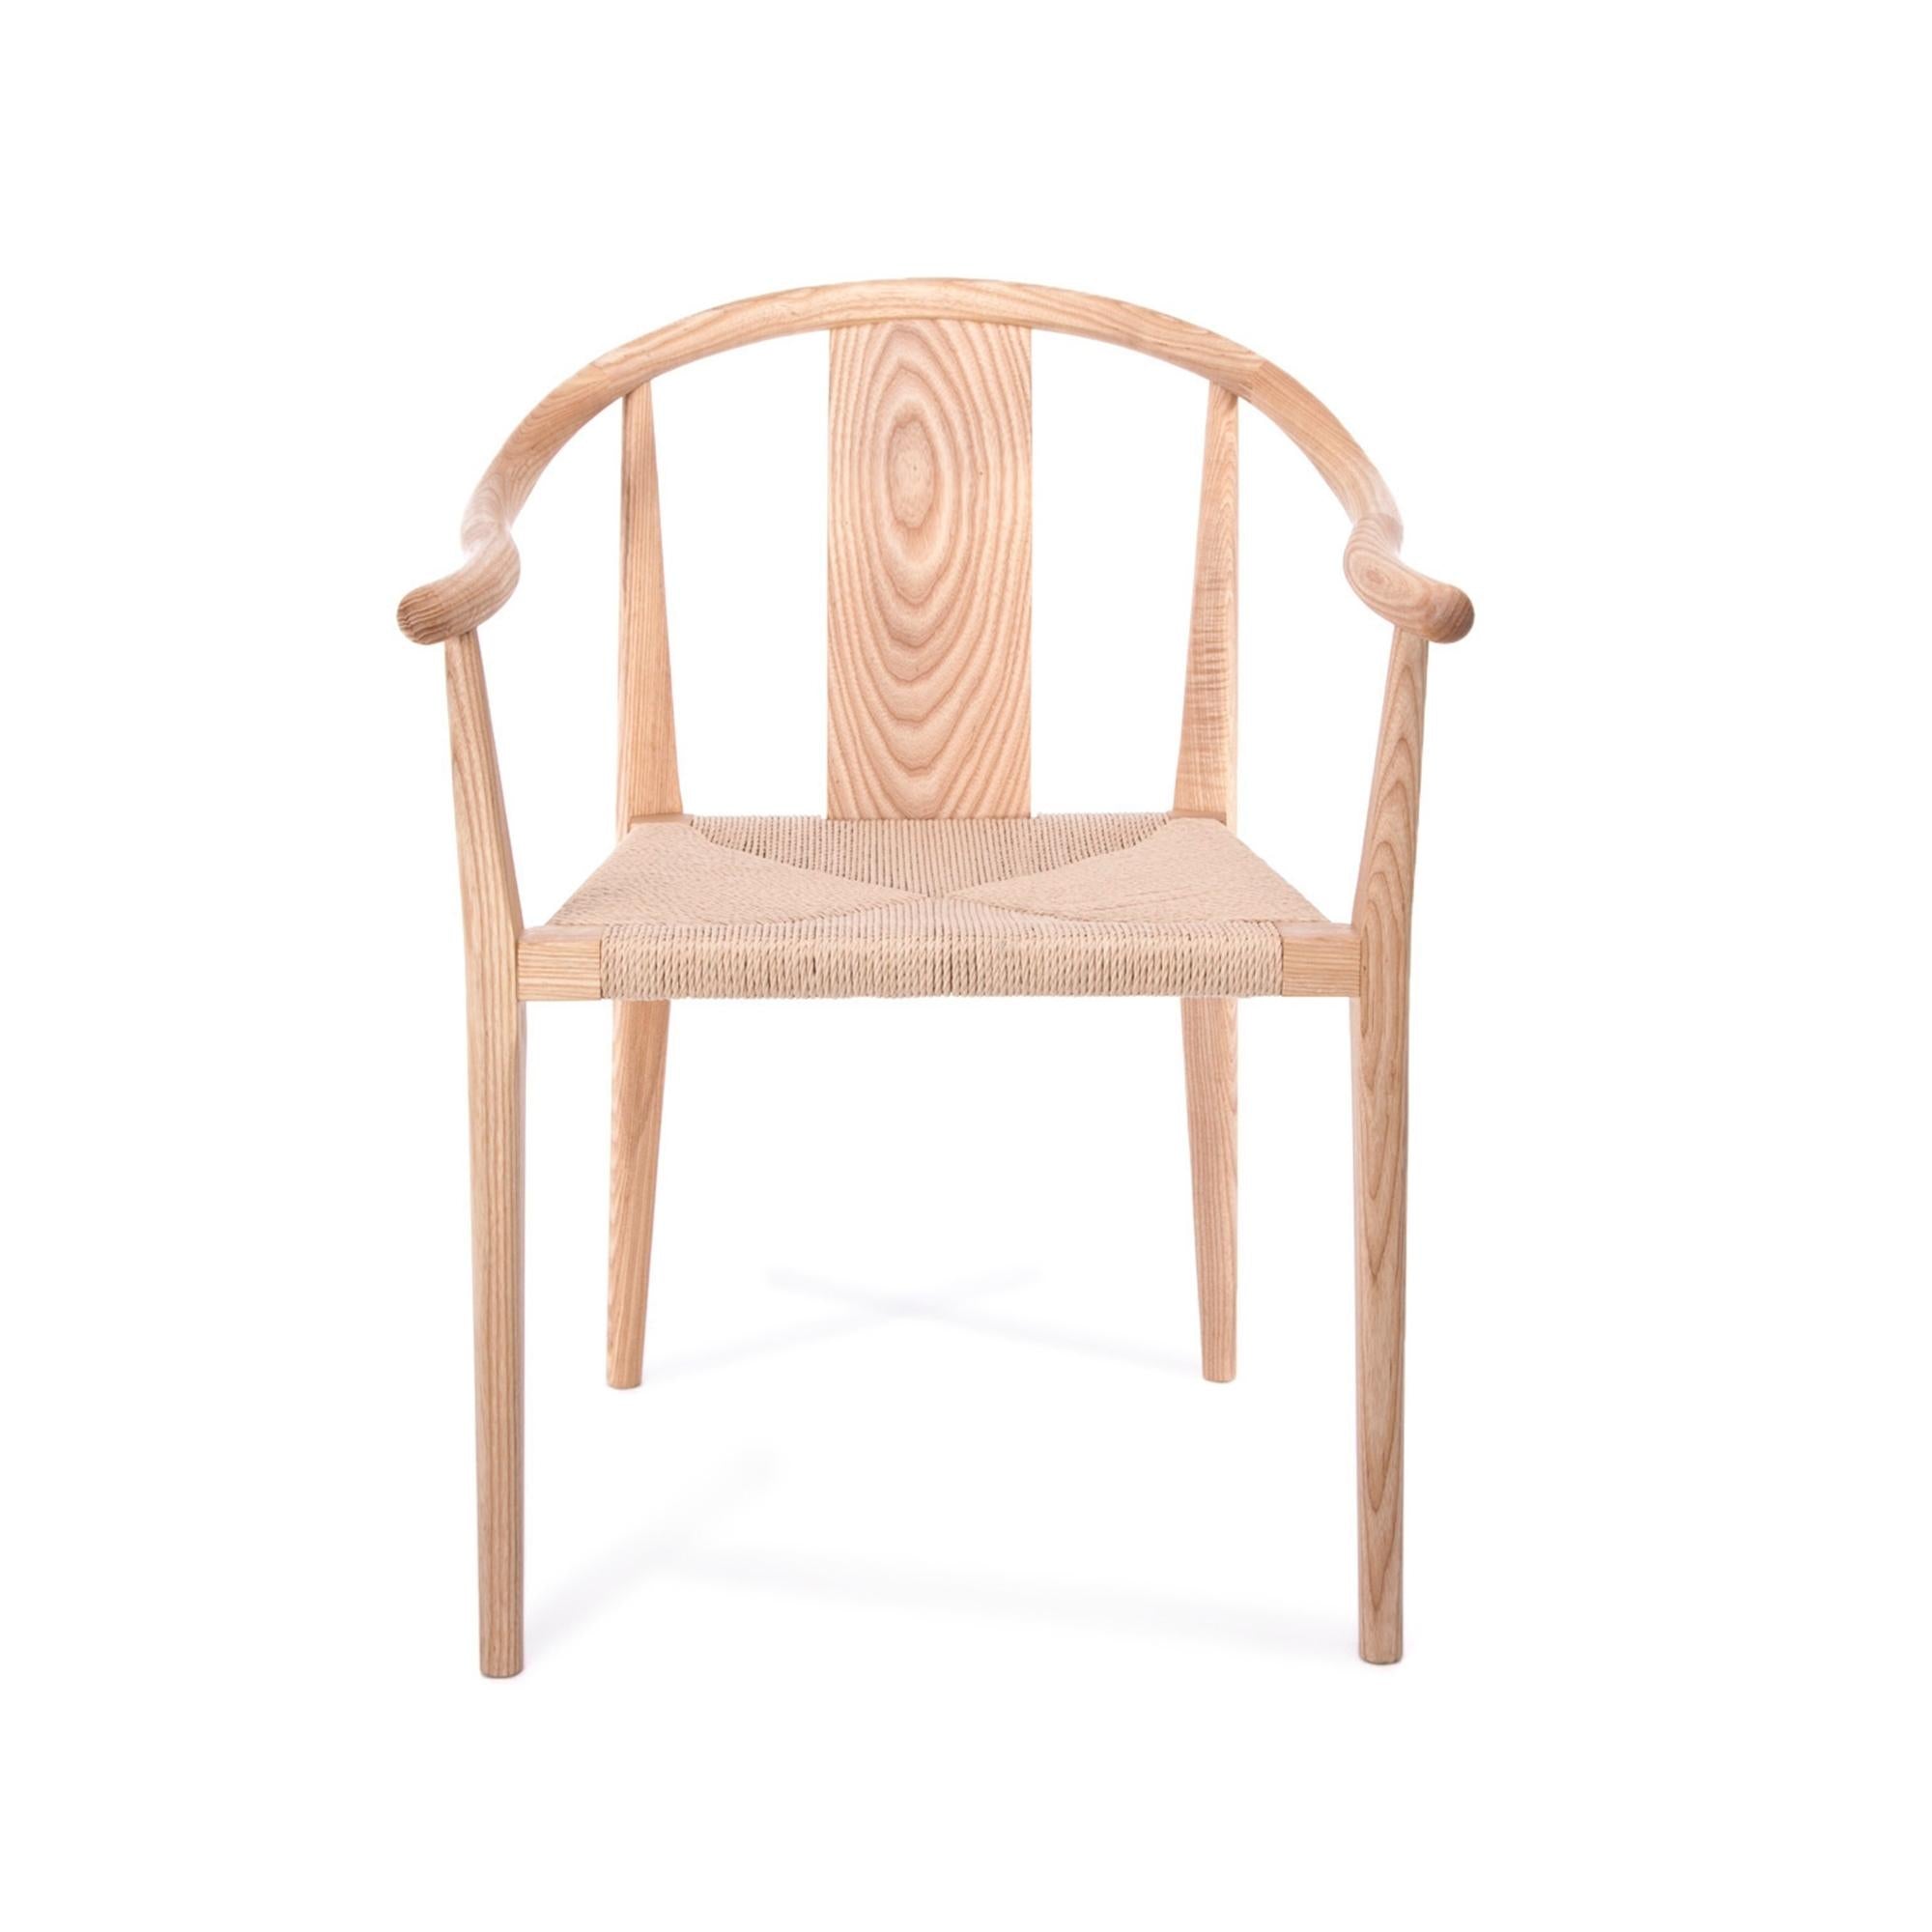 Shanghai Chair - Paper Cord